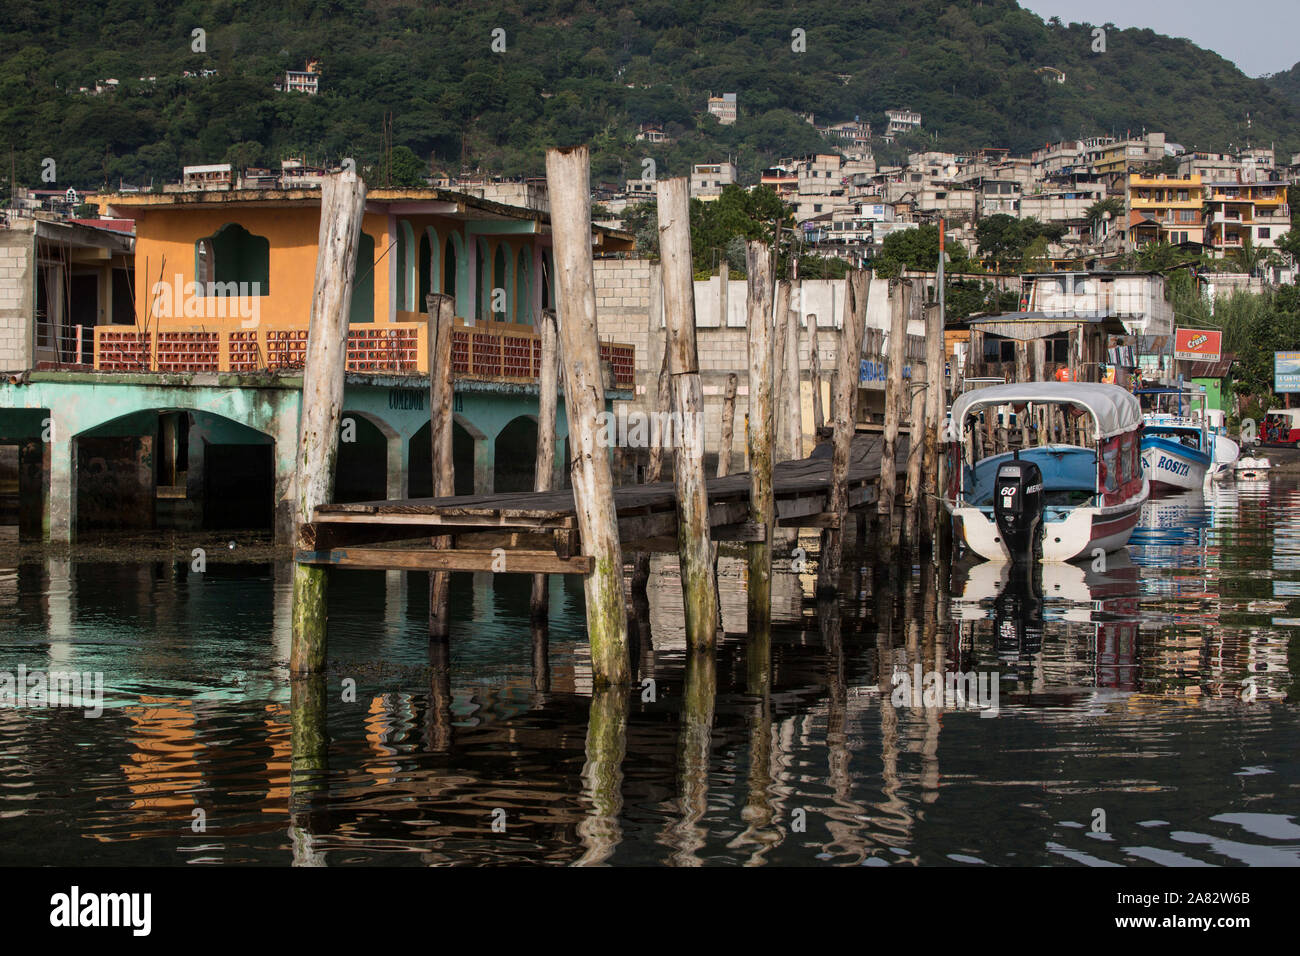 L'un des quais de la ville avec des bateaux et aux côtés de la ville de San Pedro en arrière-plan. Depuis 2009 le Lac Atitlan au Guatemala a augmenté de plus de 30 pieds. Banque D'Images